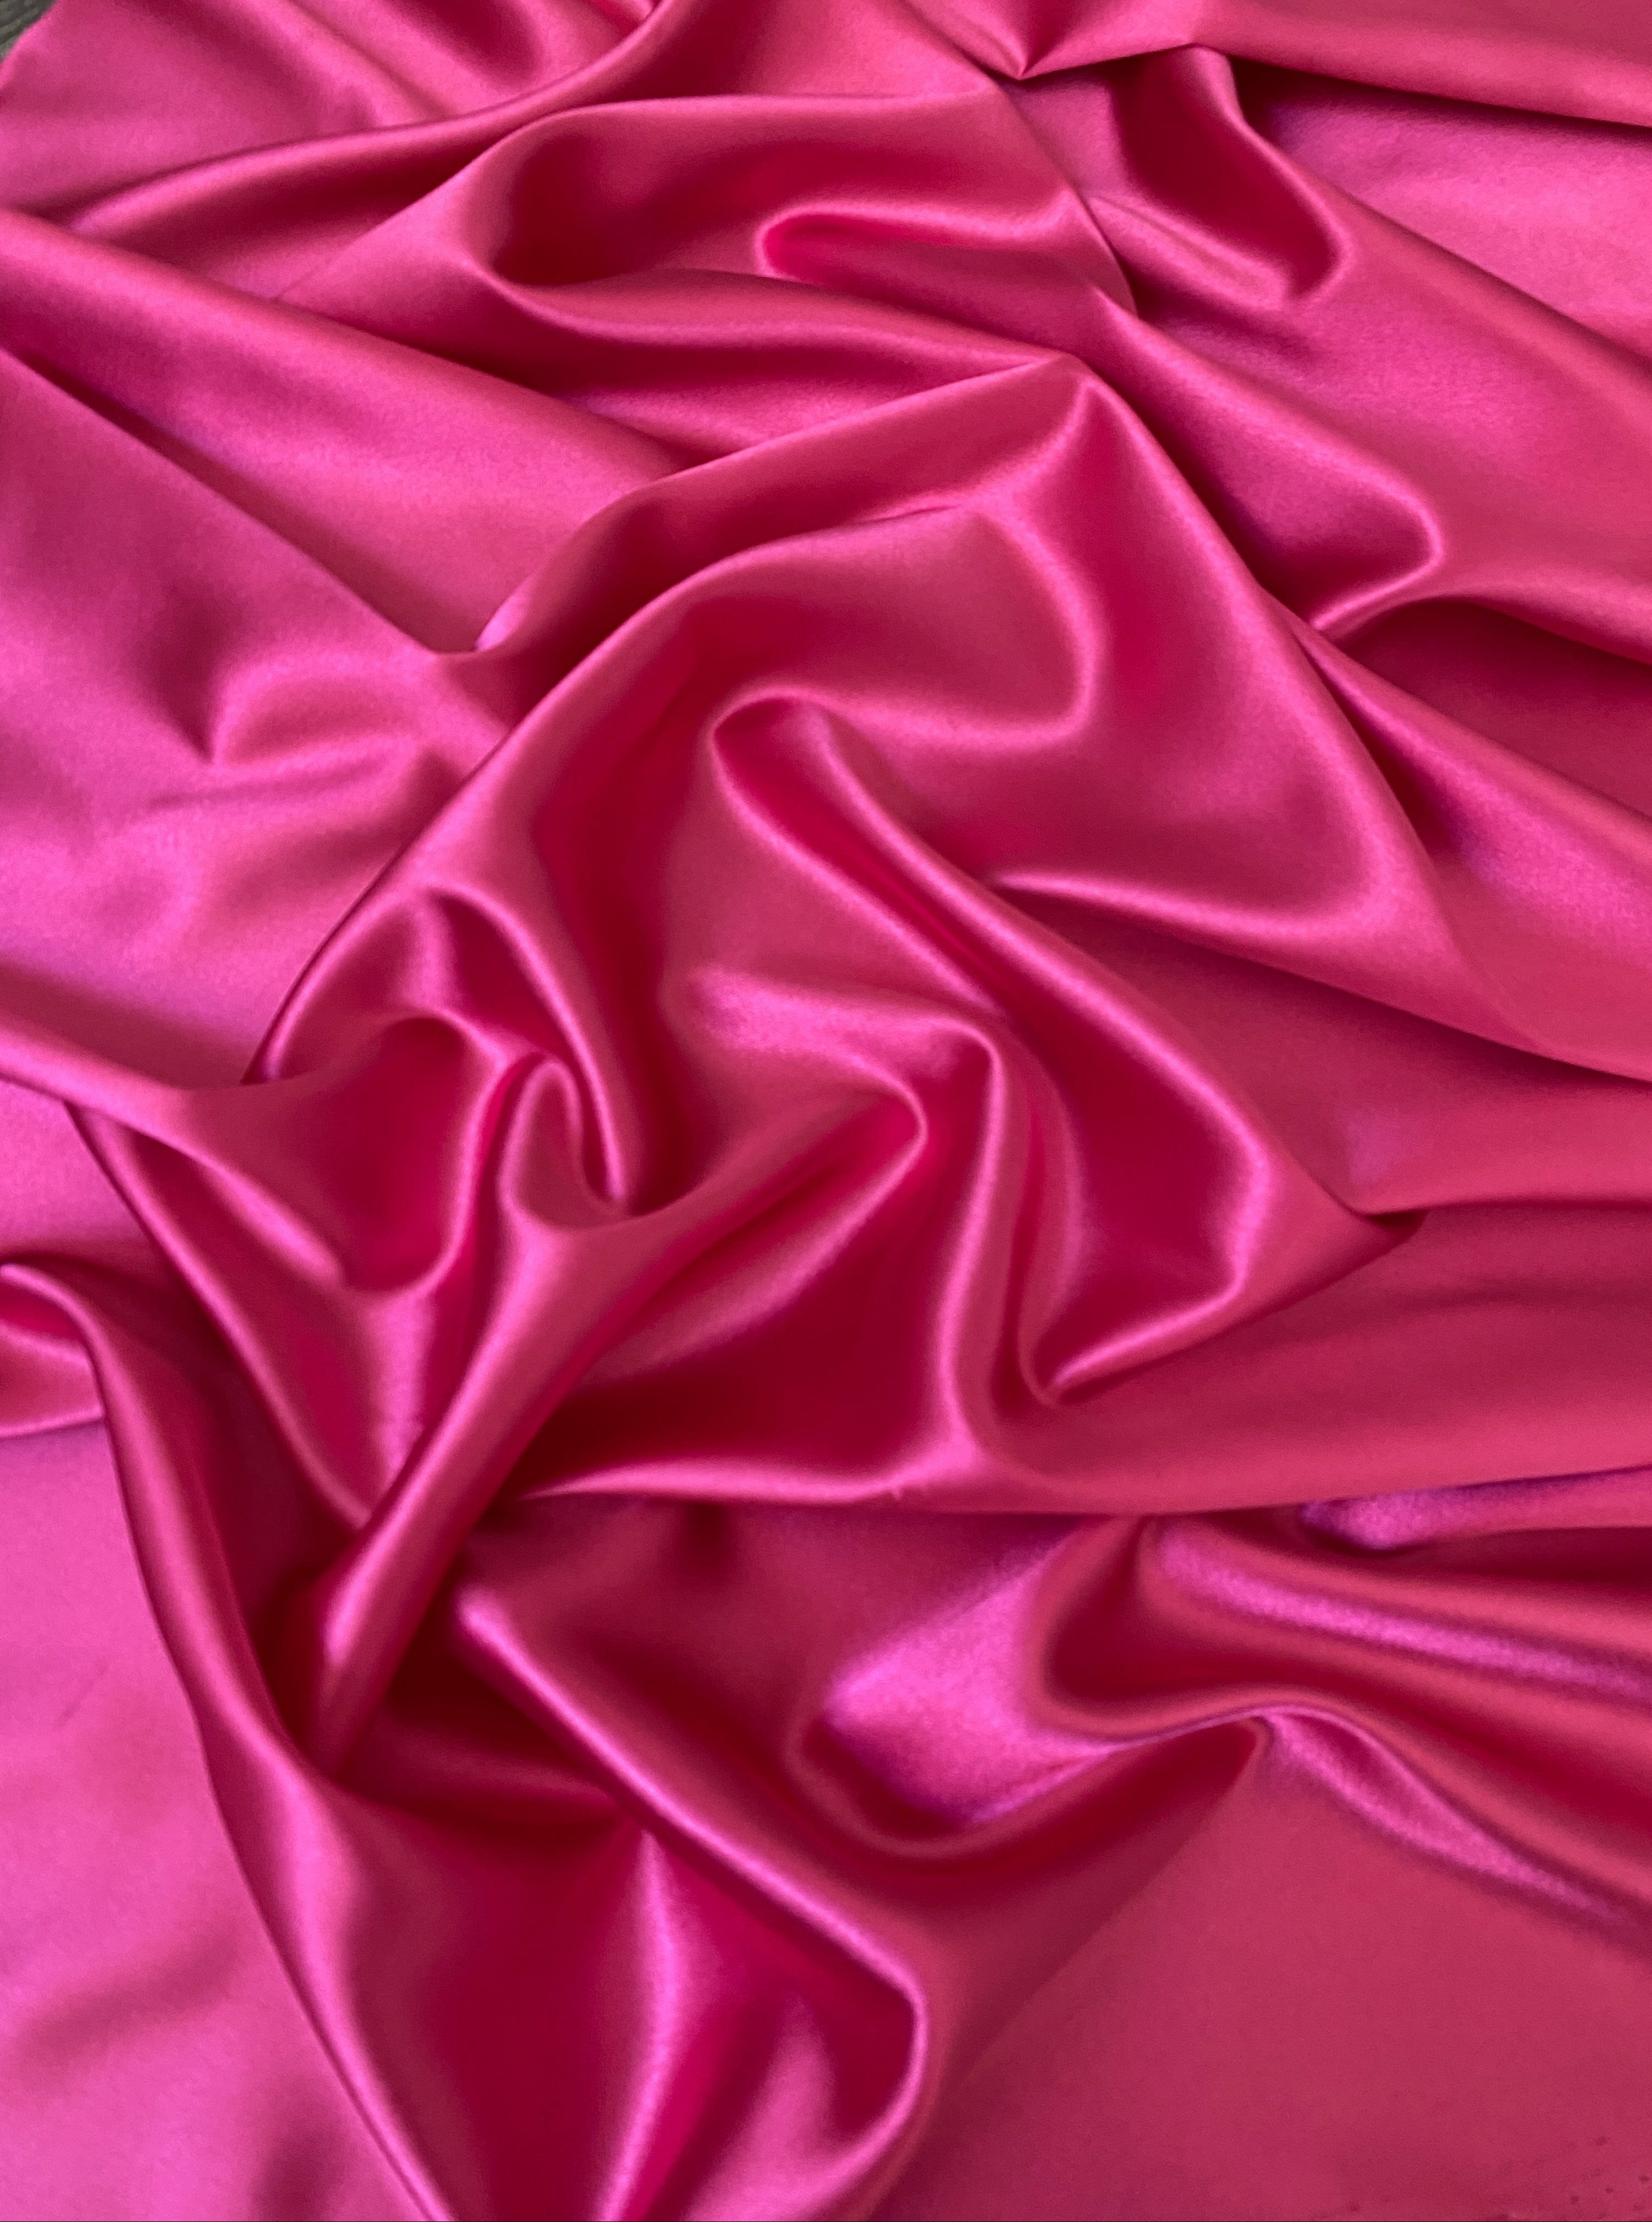 Shop now Hot Pink Silky Stretch Satin by Yard- Kiki Textiles – KikiTextiles